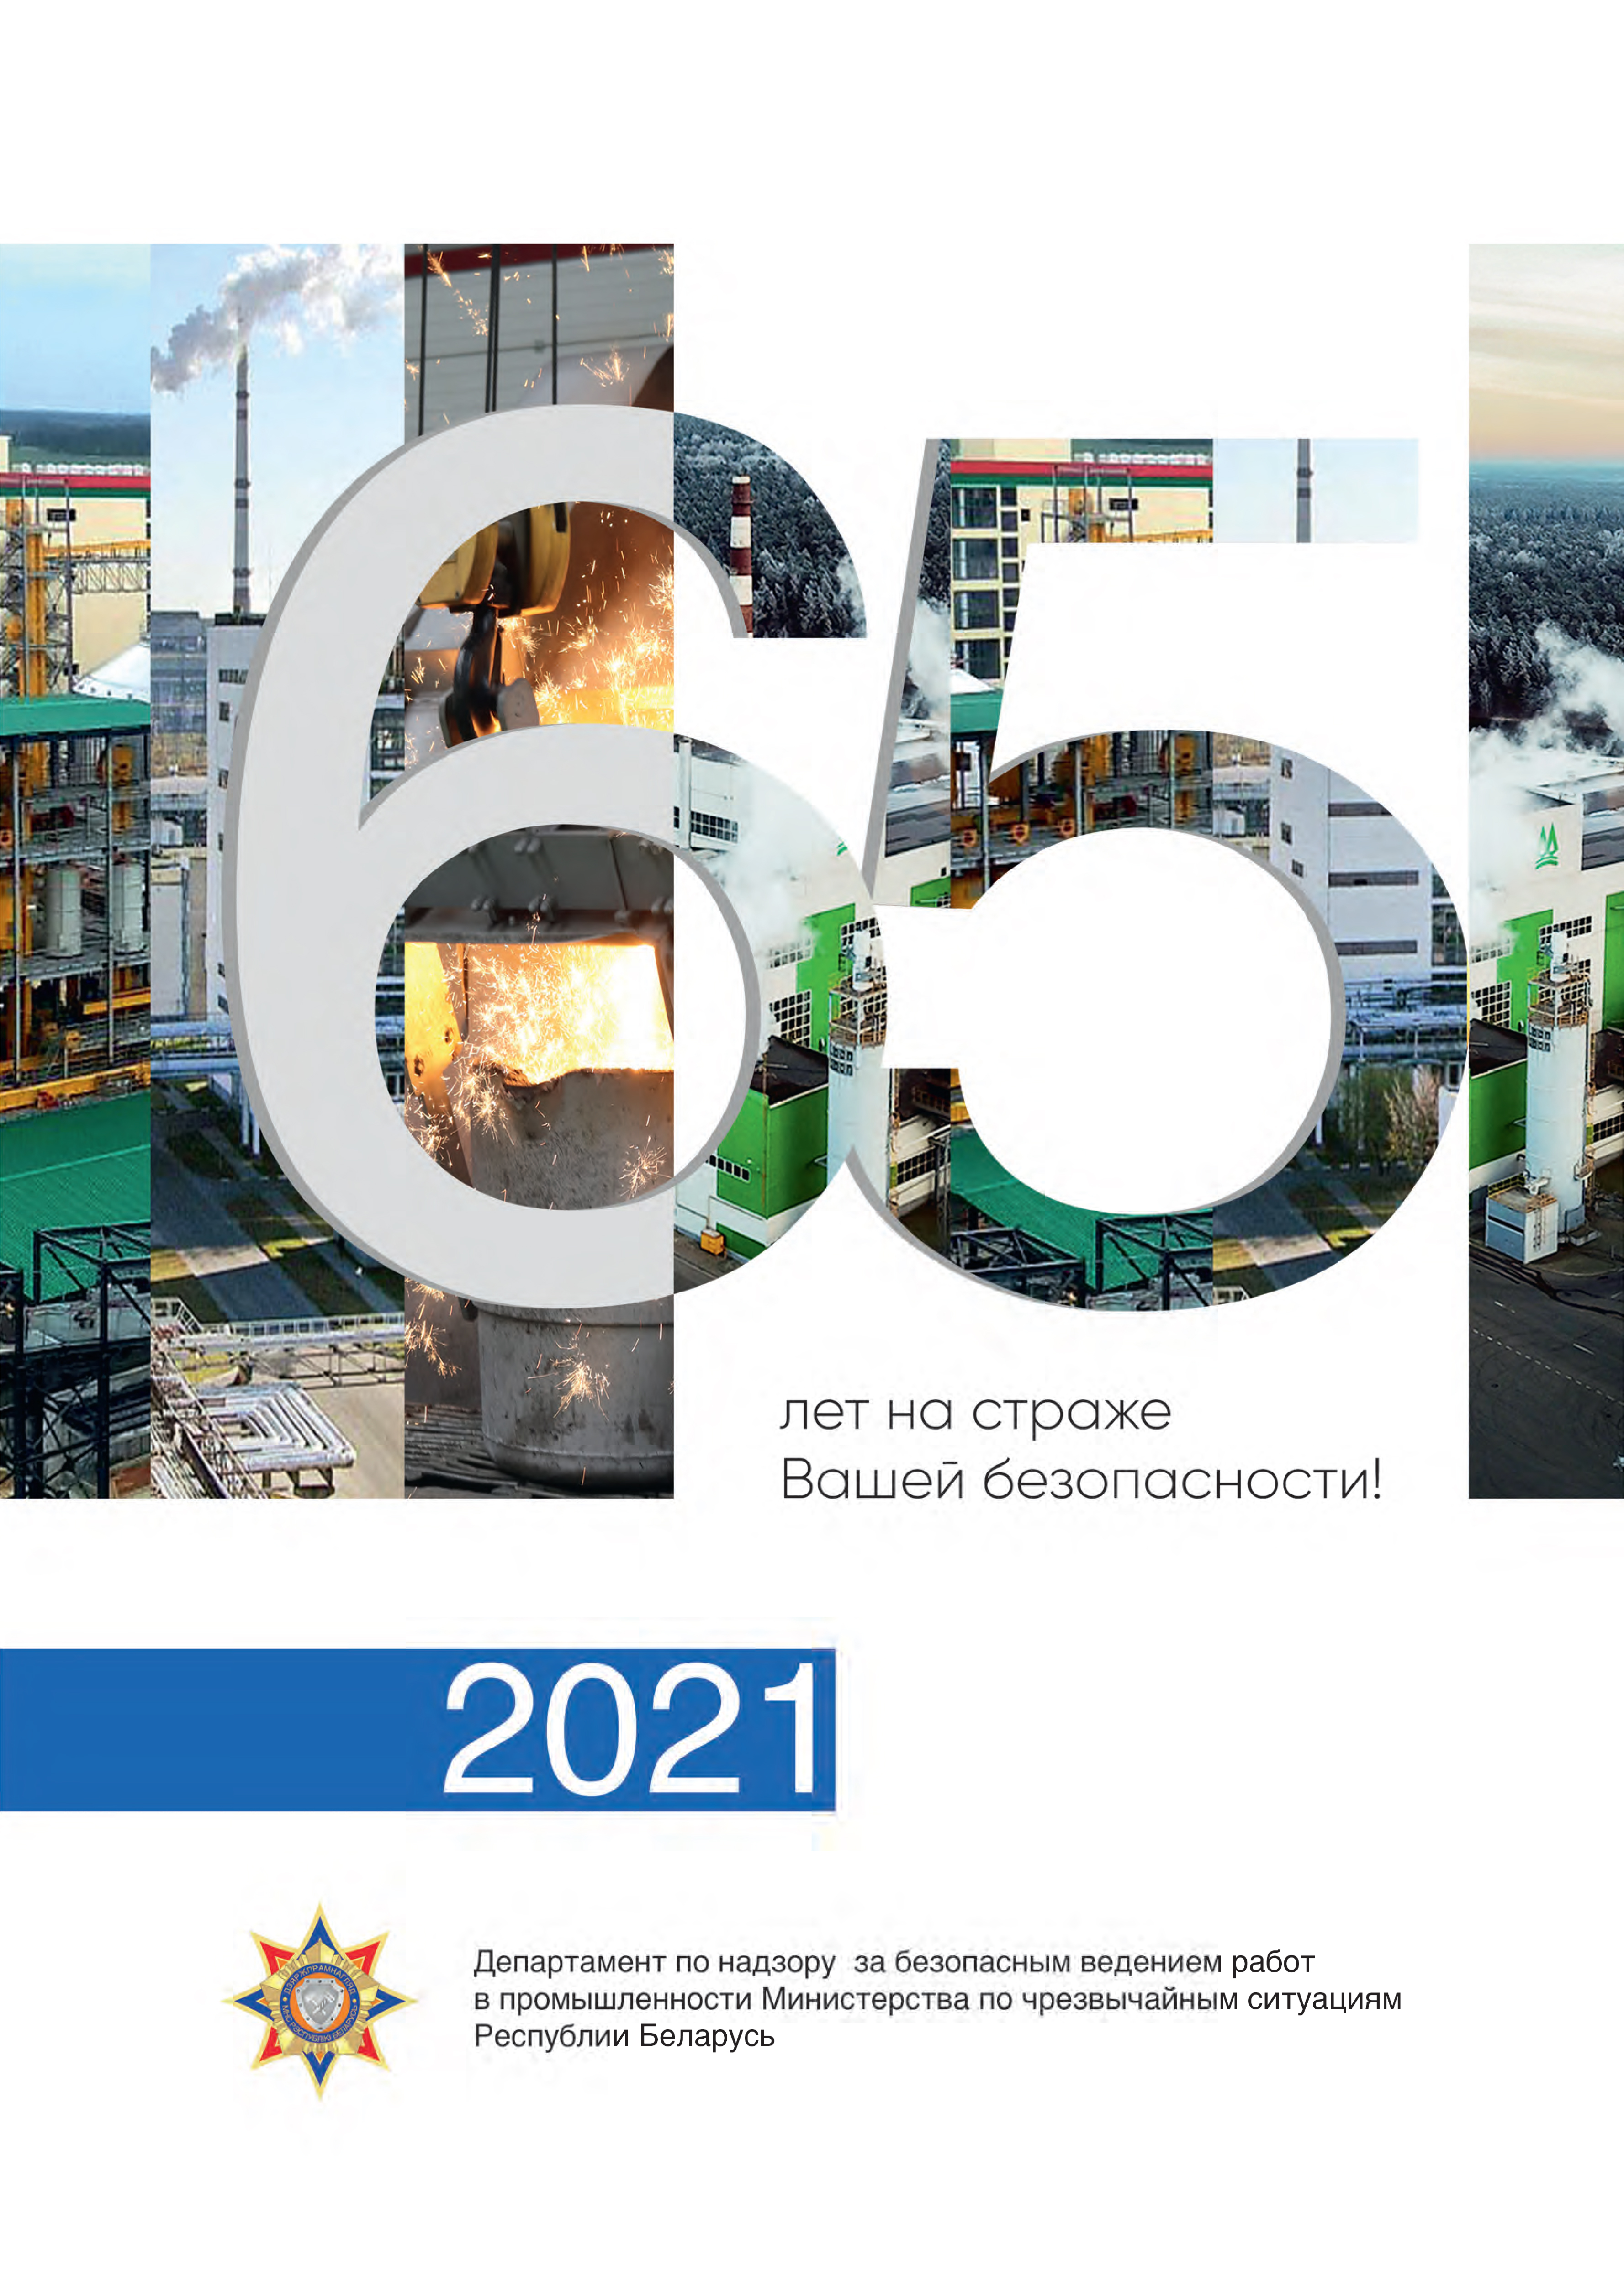 Госпромнадзор выпустил календарь на 2021 год